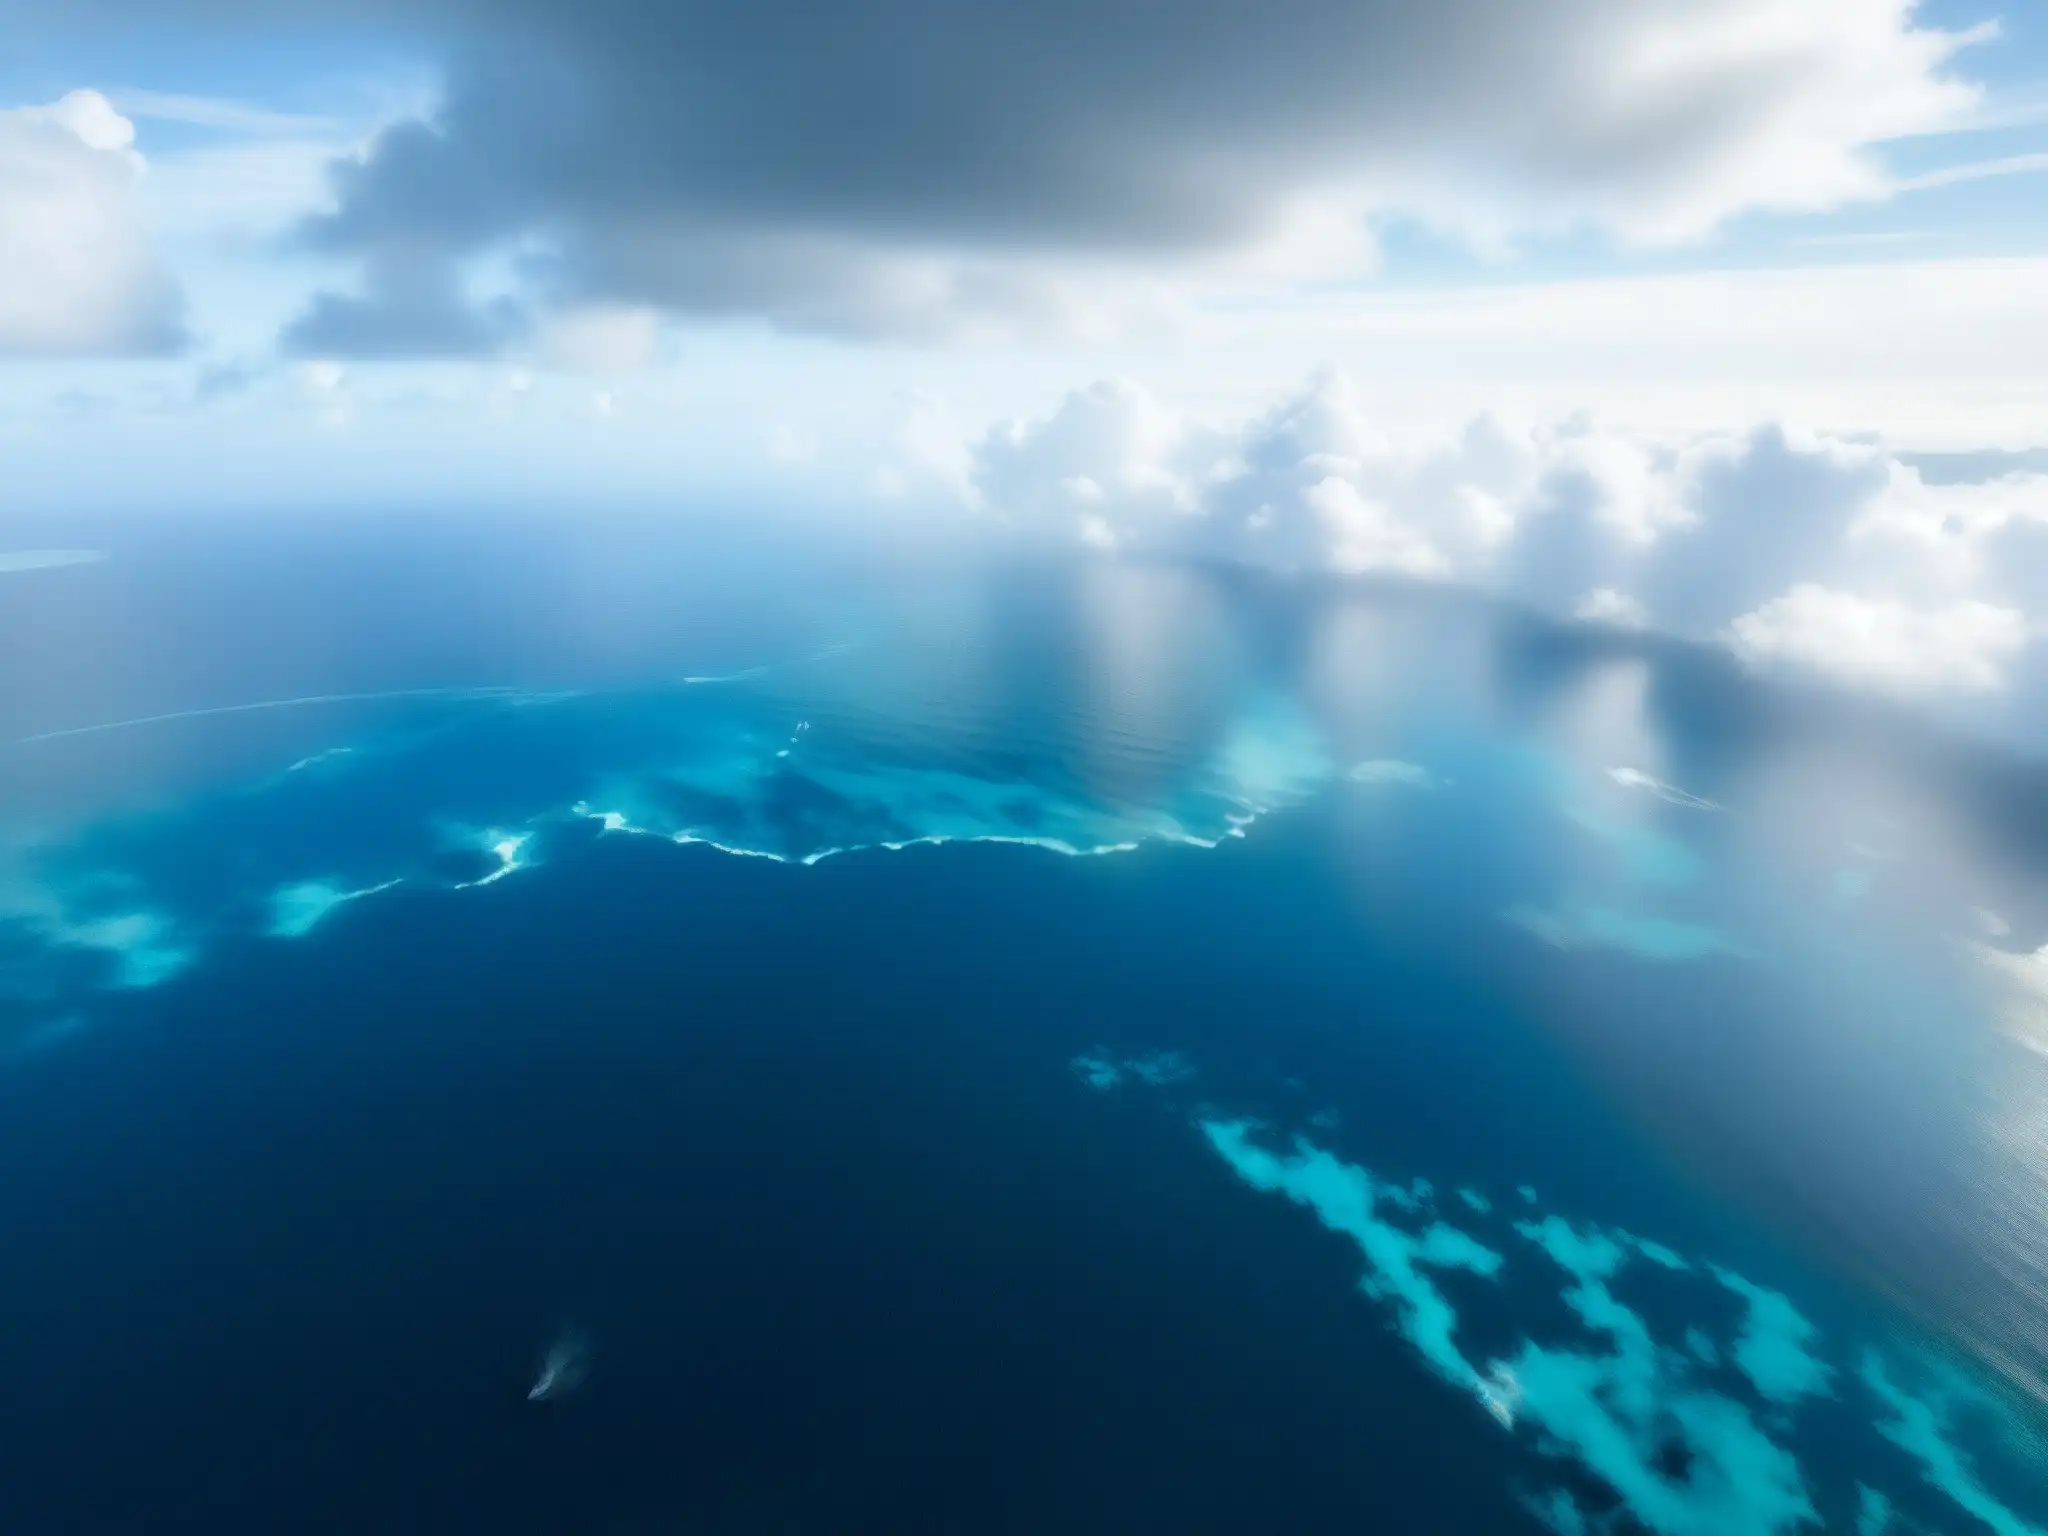 Misterio y peligro en el Triángulo de las Bermudas: océano azul y nubes ominosas con forma de remolino, barco y avión distantes